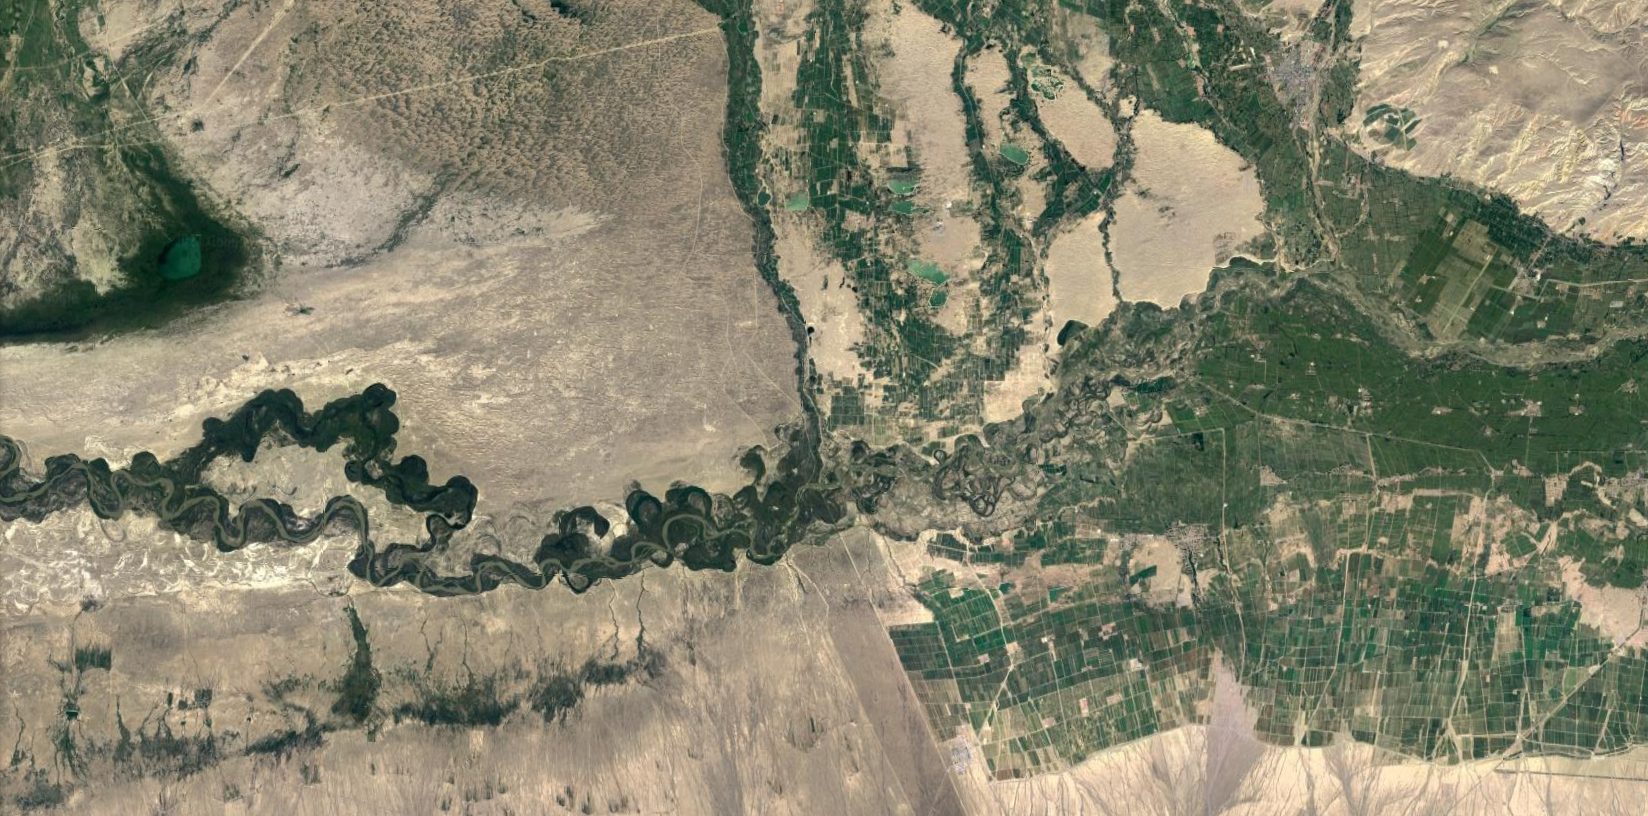 哈萨克斯坦卫星地图图片